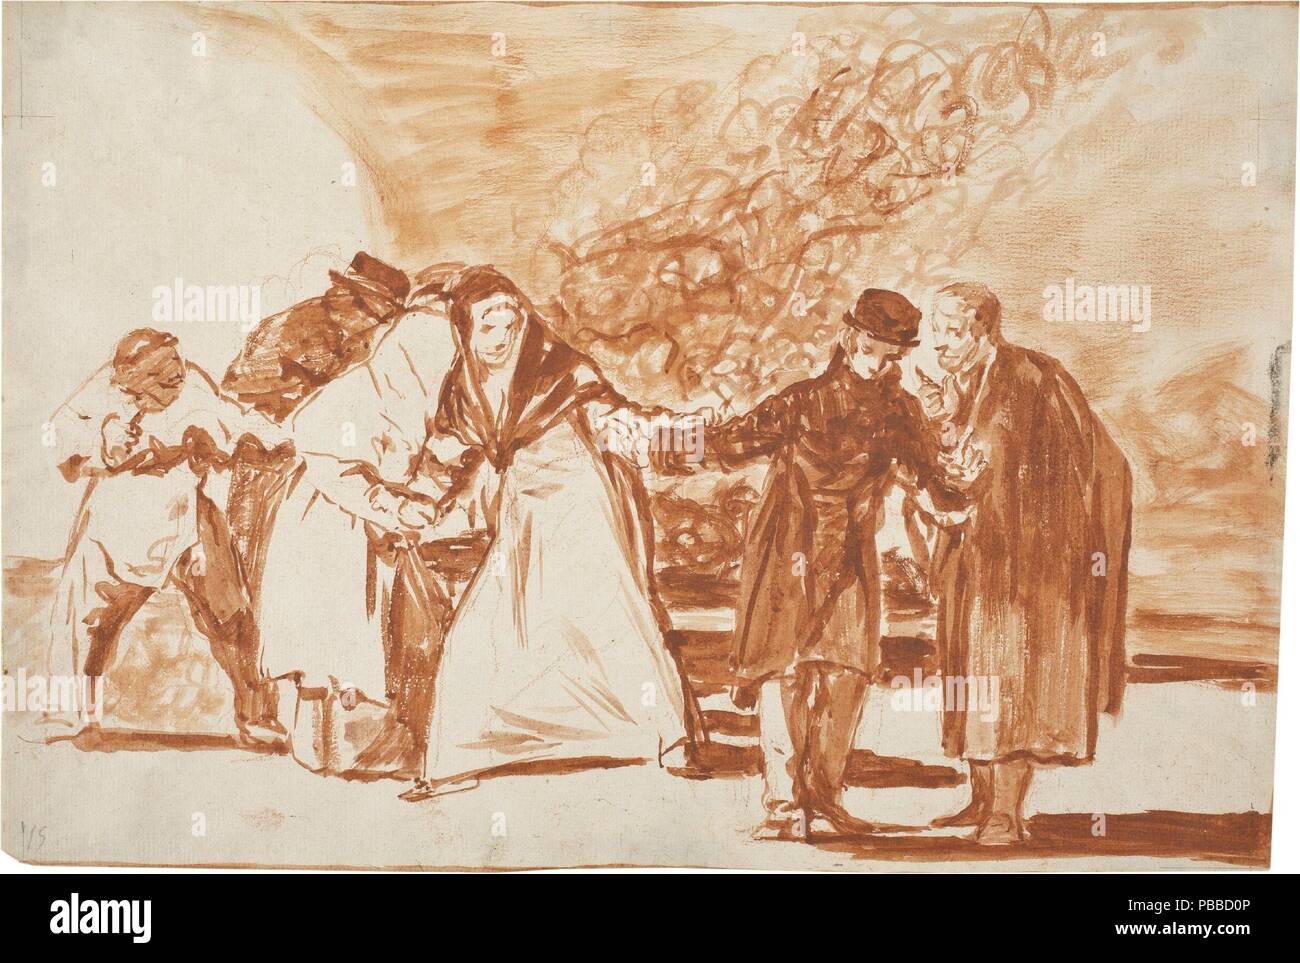 Francisco de Goya y Lucientes/ "Ermahnung". 1815 - 1819. Red Wash, Rote Kreide auf Elfenbein Bütten. Museum: Museo del Prado, Madrid, España. Stockfoto